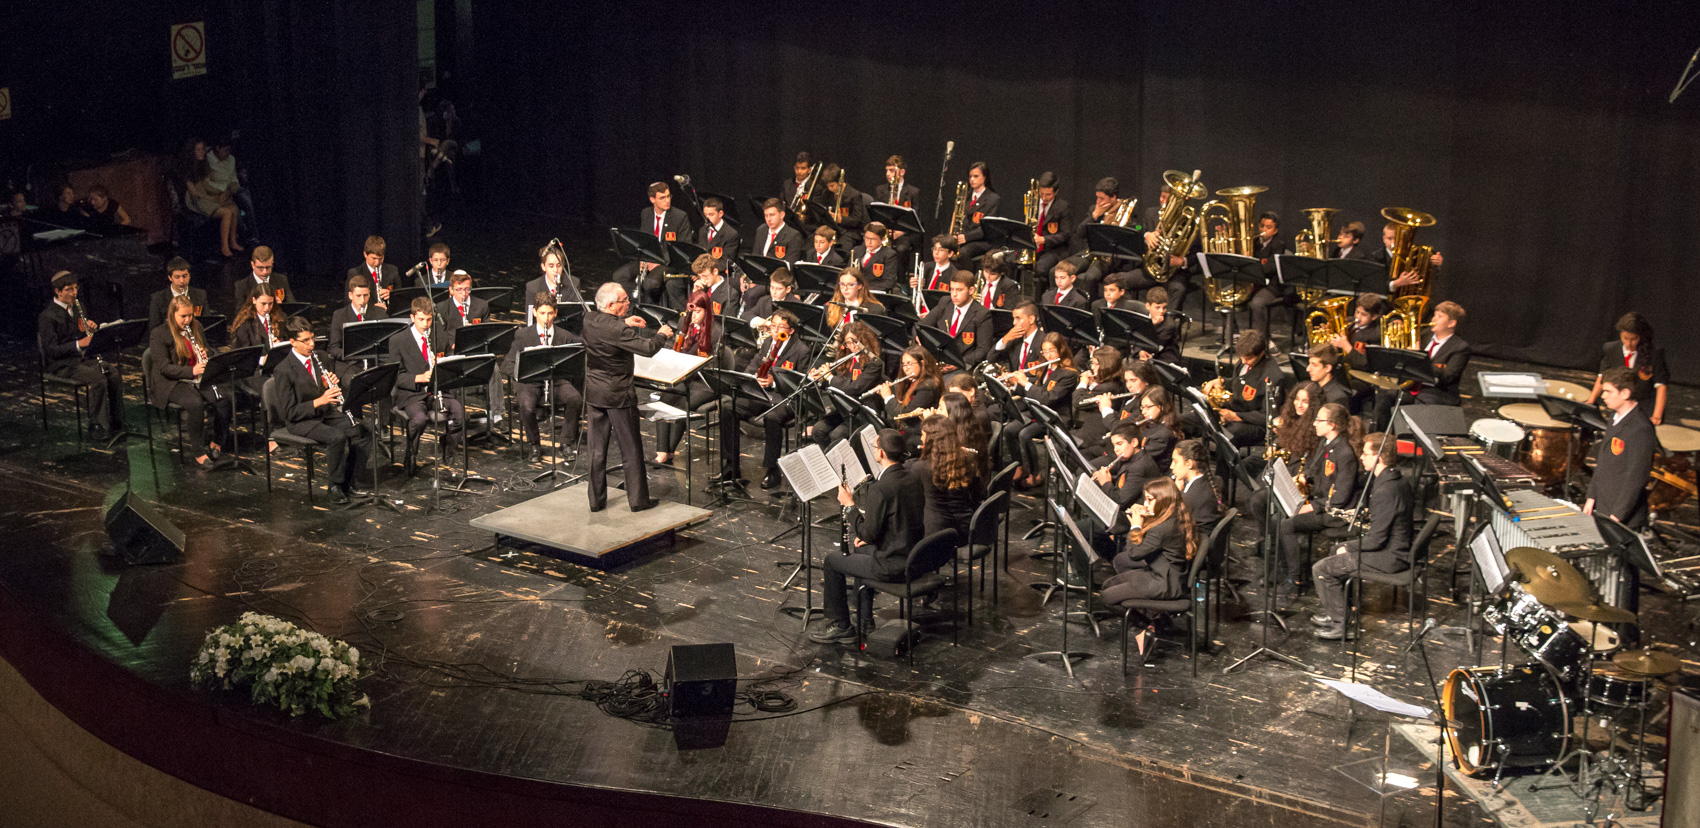 הקונסרבטוריון העירוני פתח תקוה יארח את תזמורת צה"ל בקונצרט חגיגי במסגרת אירועי שנת ה 70 לקיומו